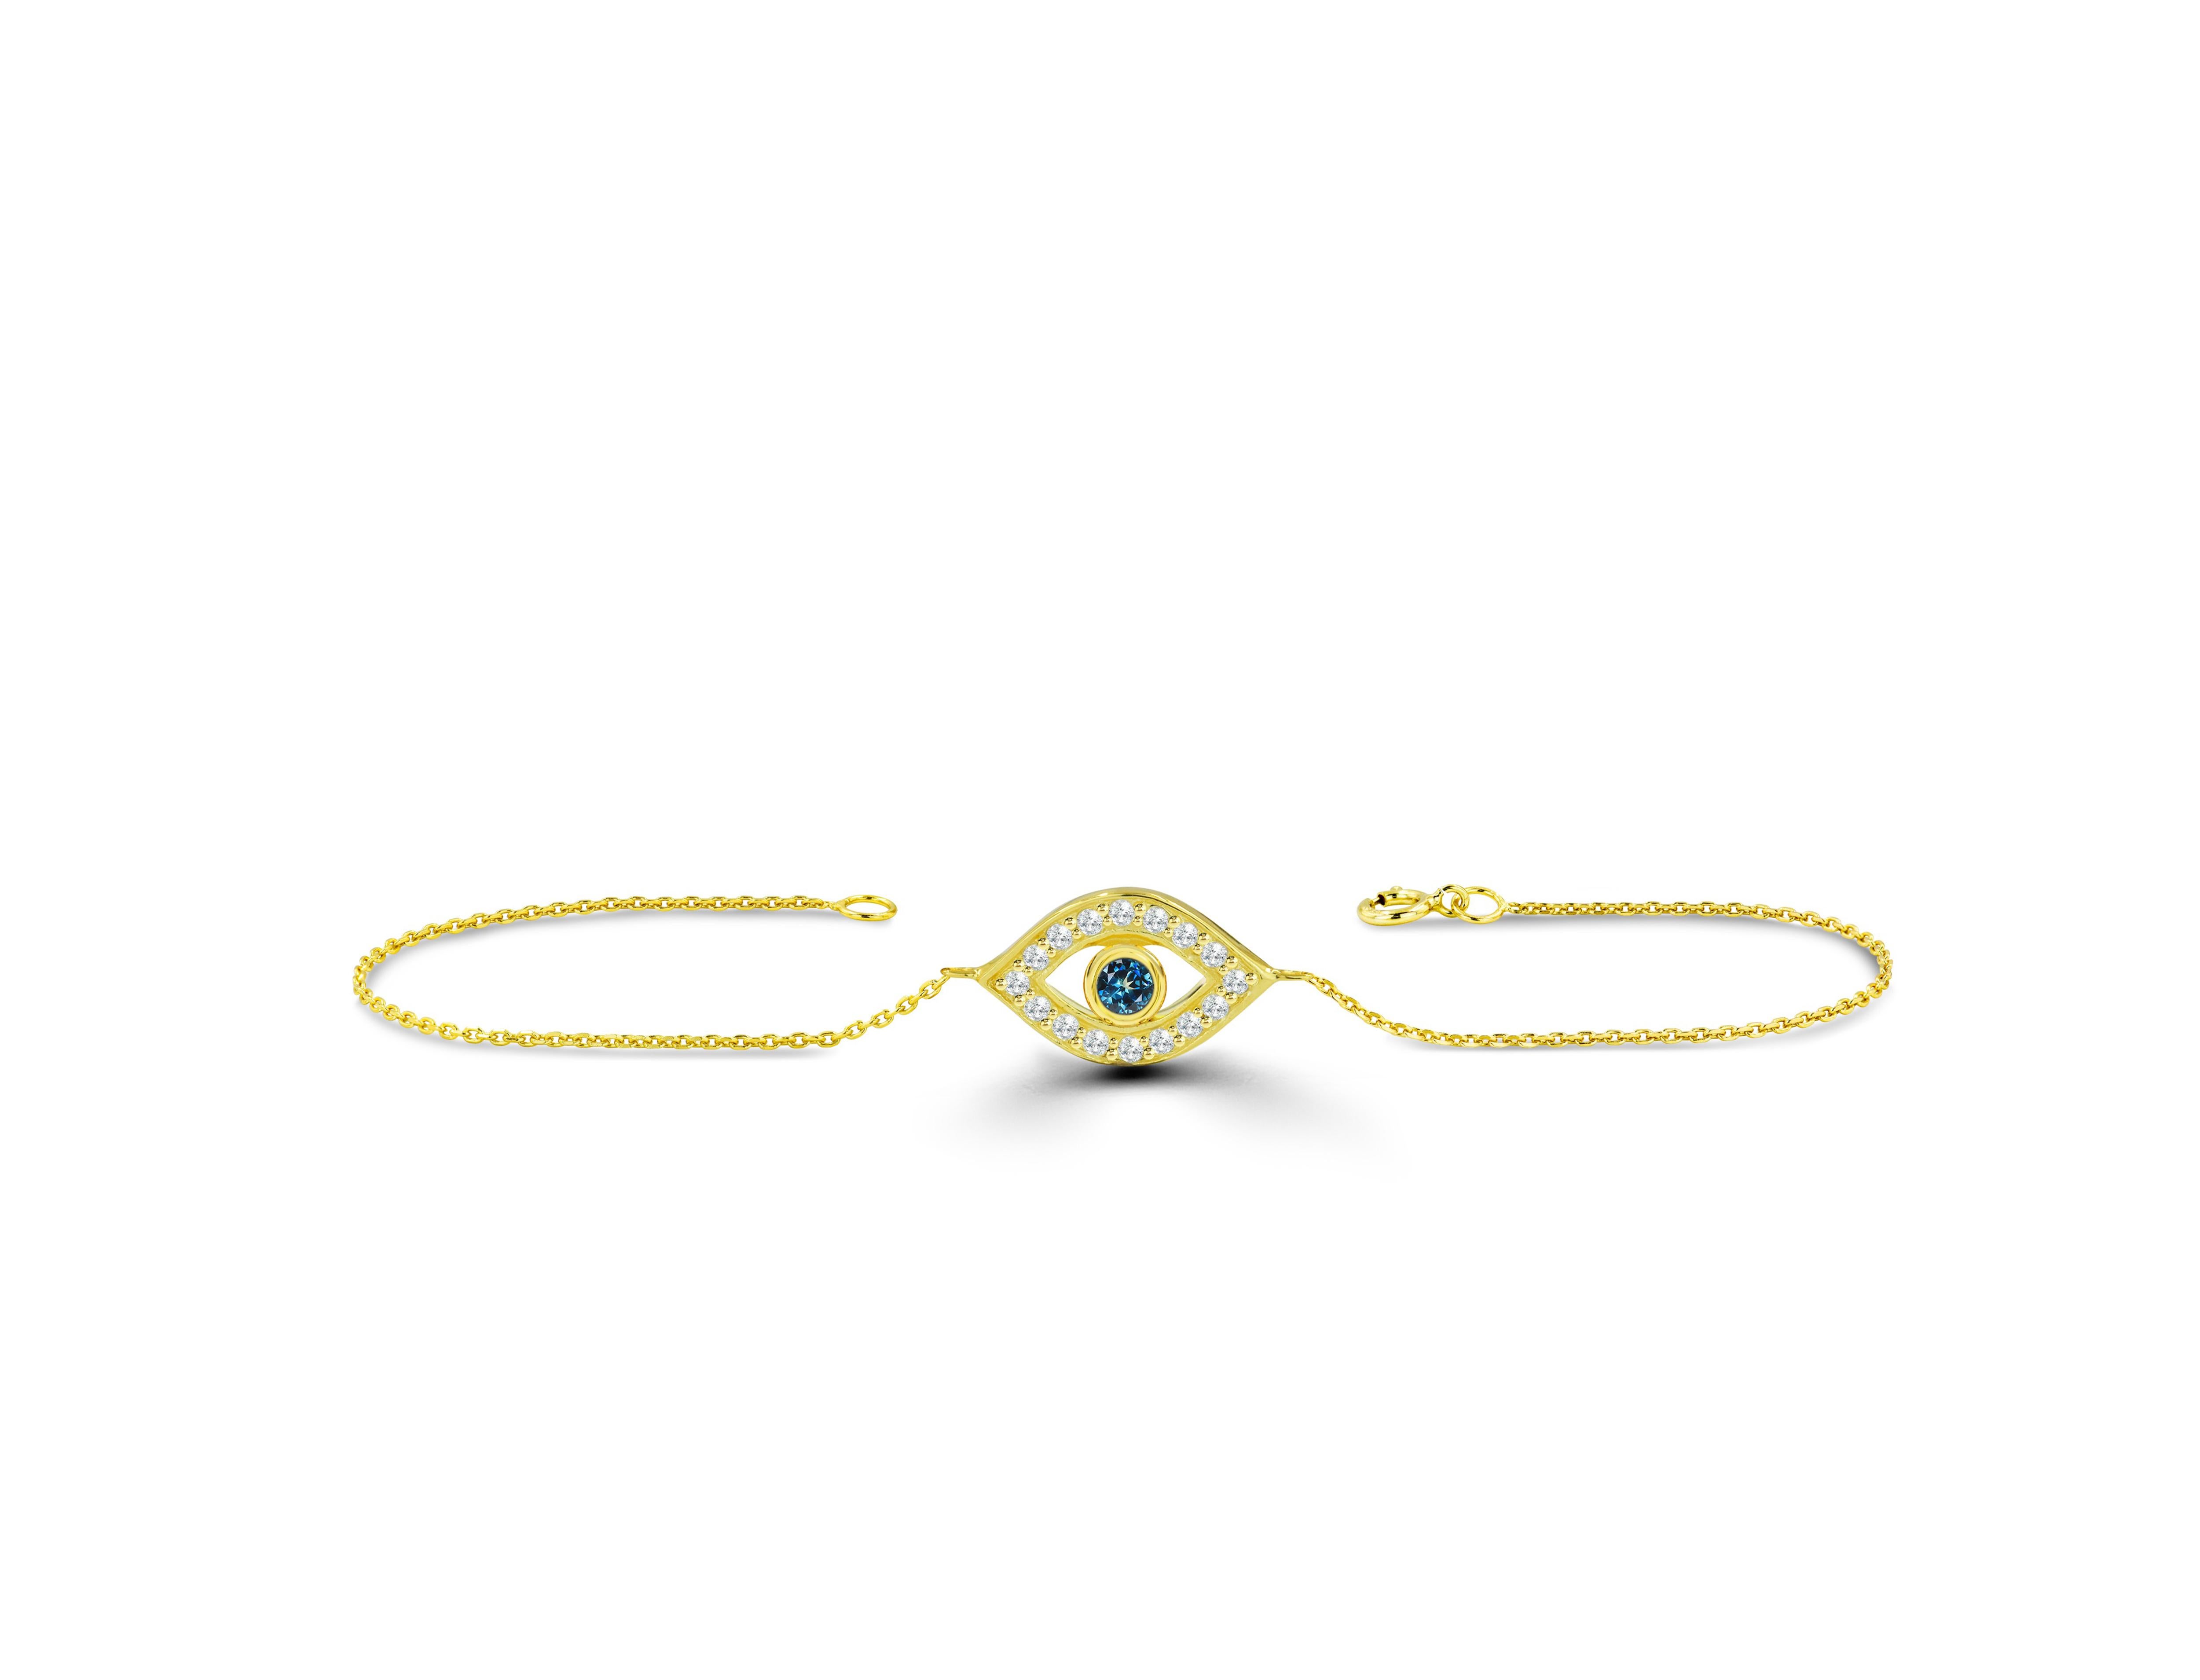 22k gold evil eye bracelet